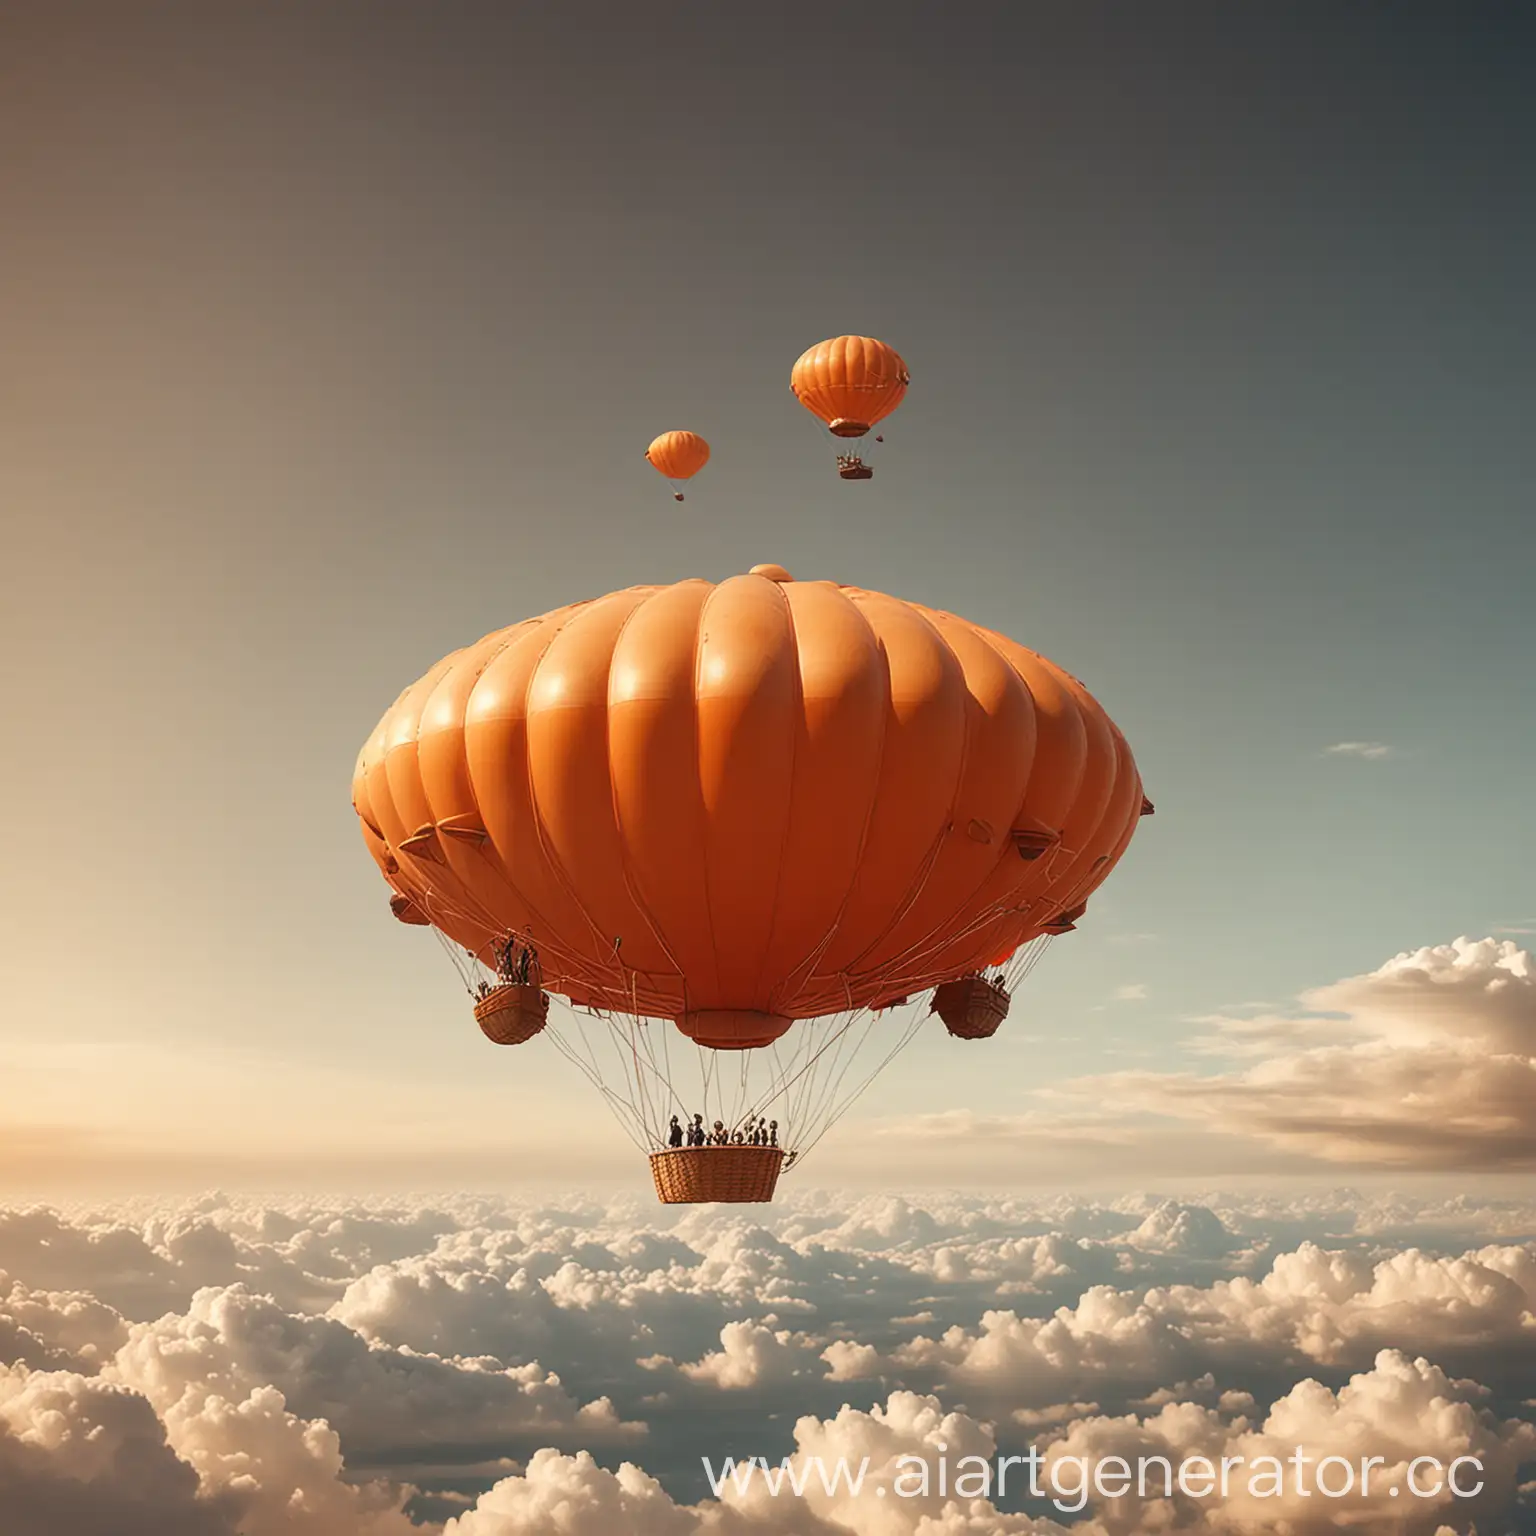 круглый воздушный шар оранжевого цвета парит в небе с бизнесменами в корзине

